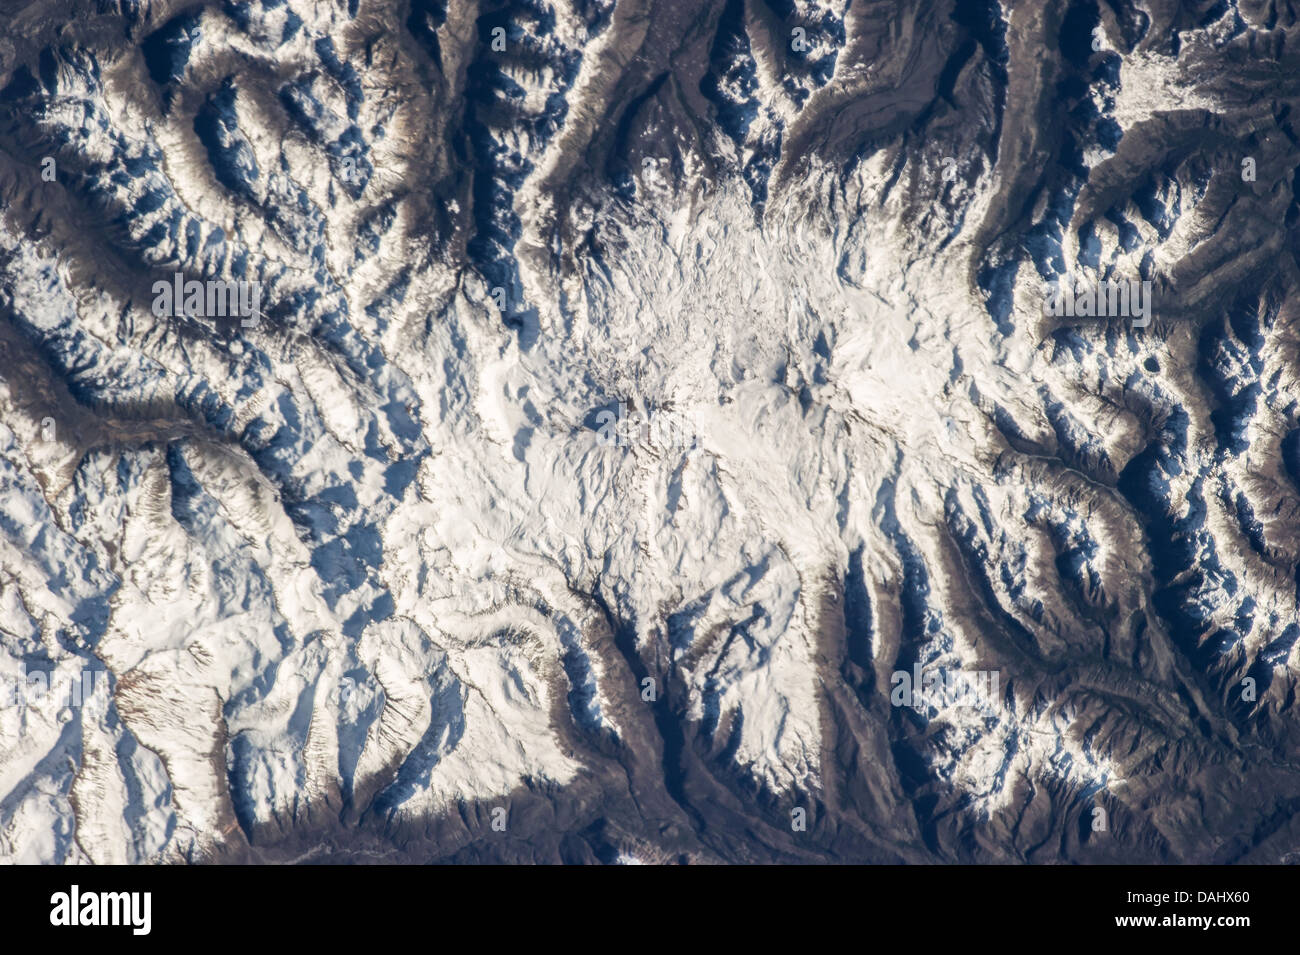 Nevados de Chillán, ein großes vulkanischen Gebiet nahe der Grenze zu Chile und Argentinien. Stockfoto